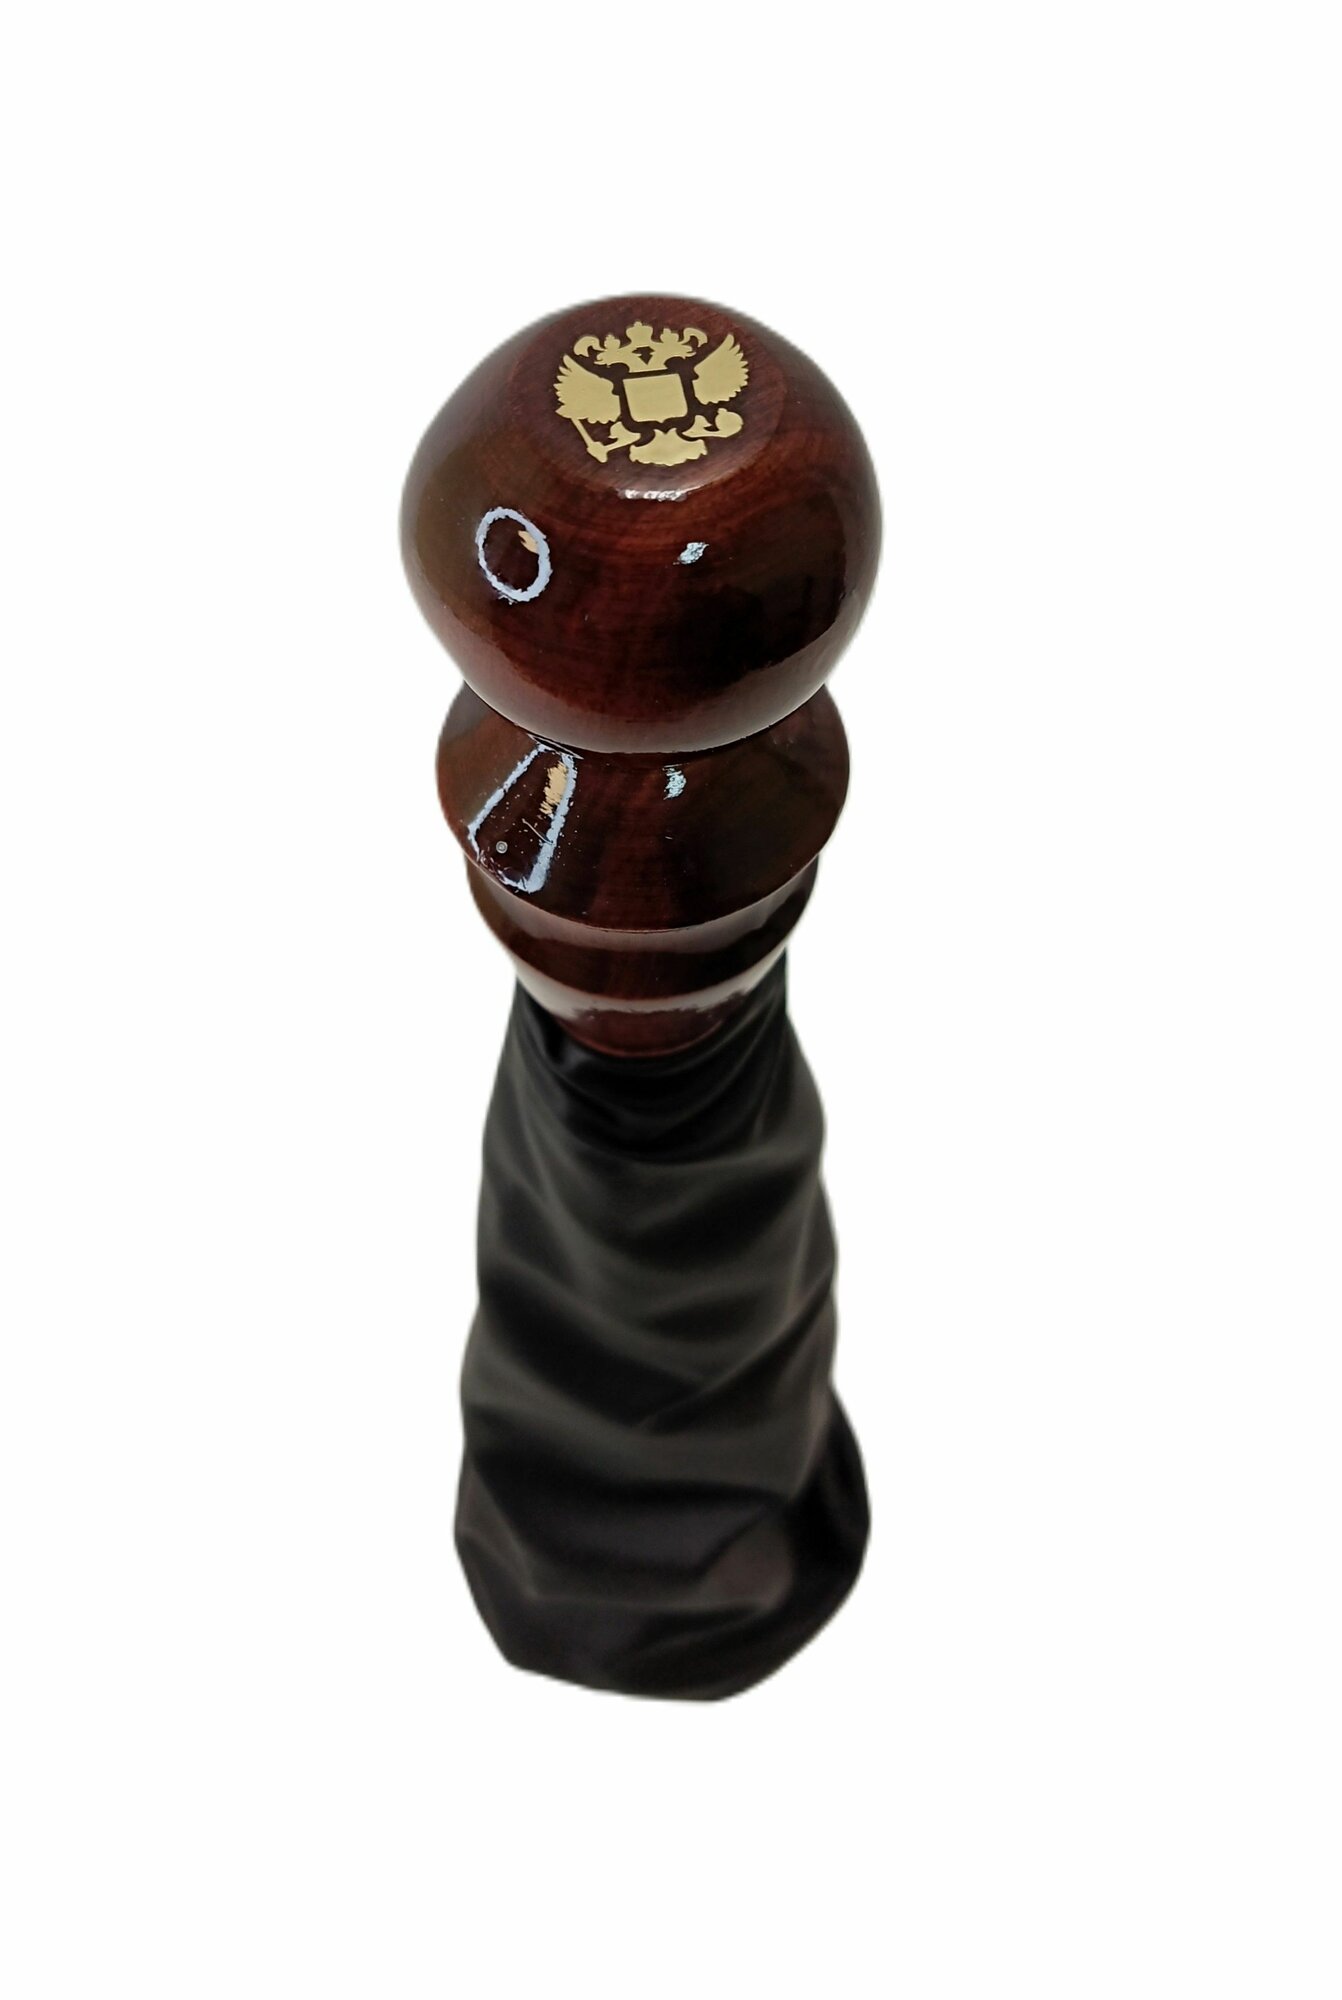 Ручка КПП + чехол (гофра) Газель искусственная кожа (деревянная ручка) герб. Высокого качества.